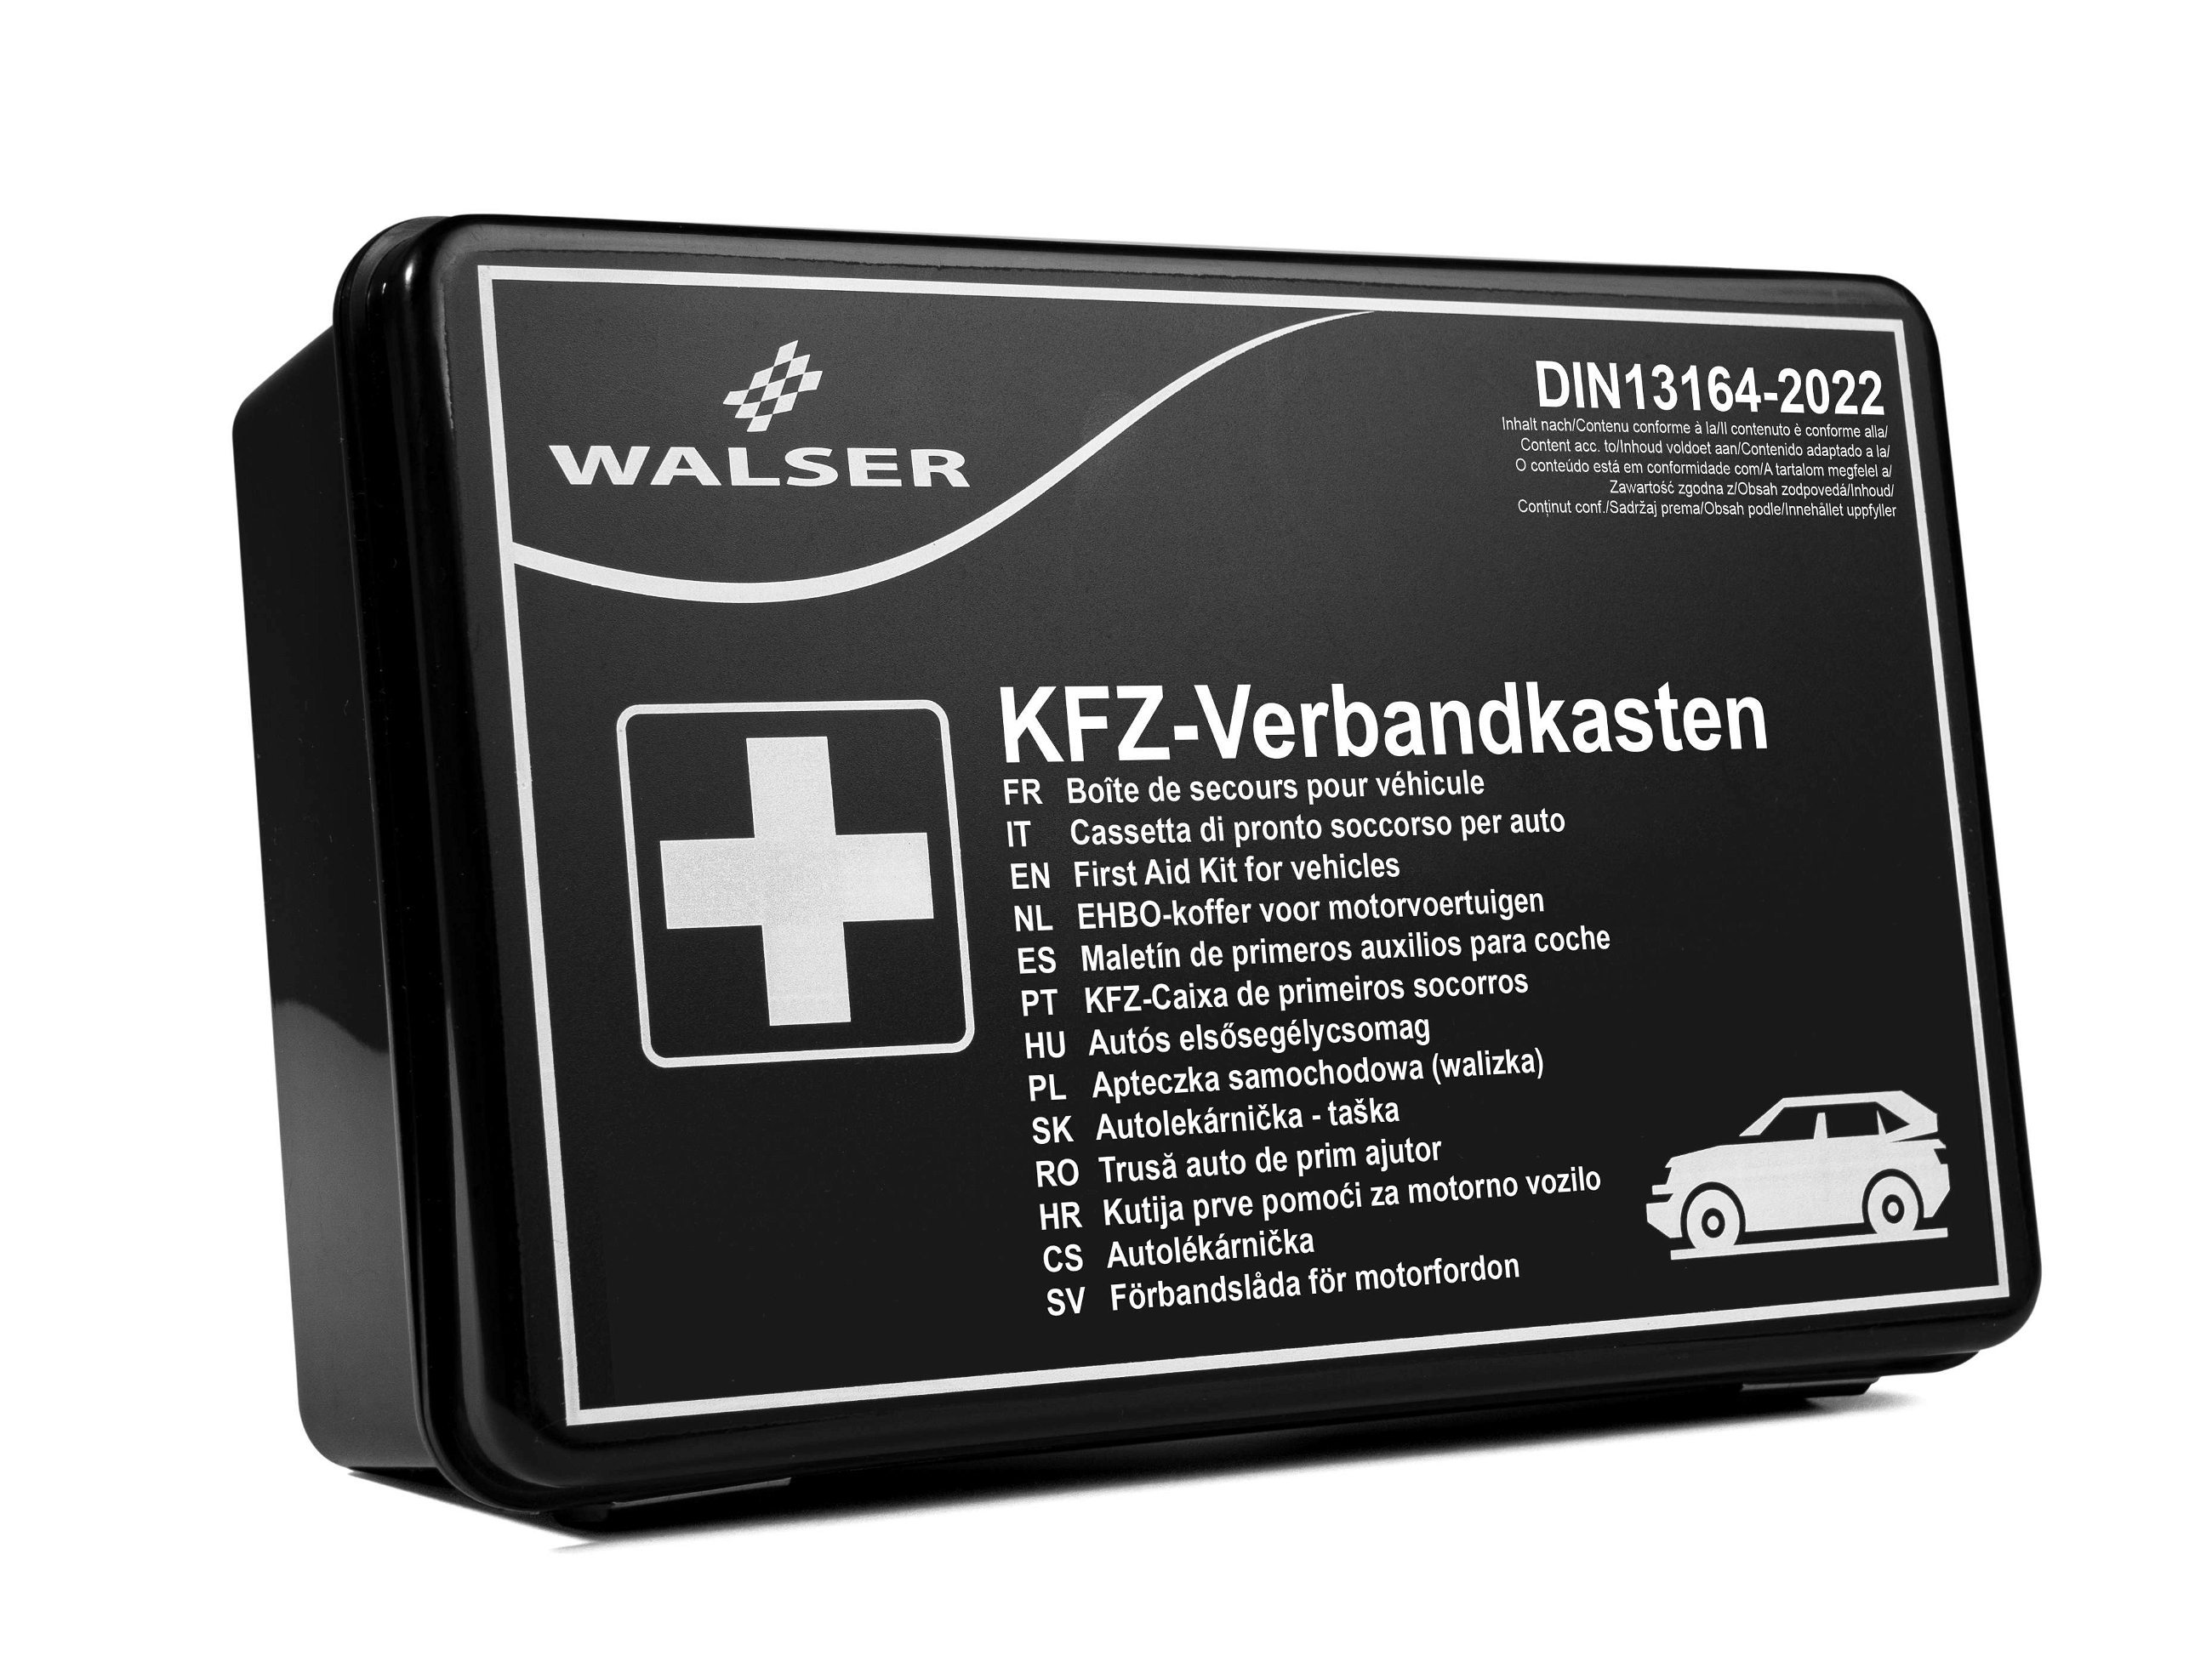 Boîte de secours KFZ noire selon la norme DIN 13164:2022